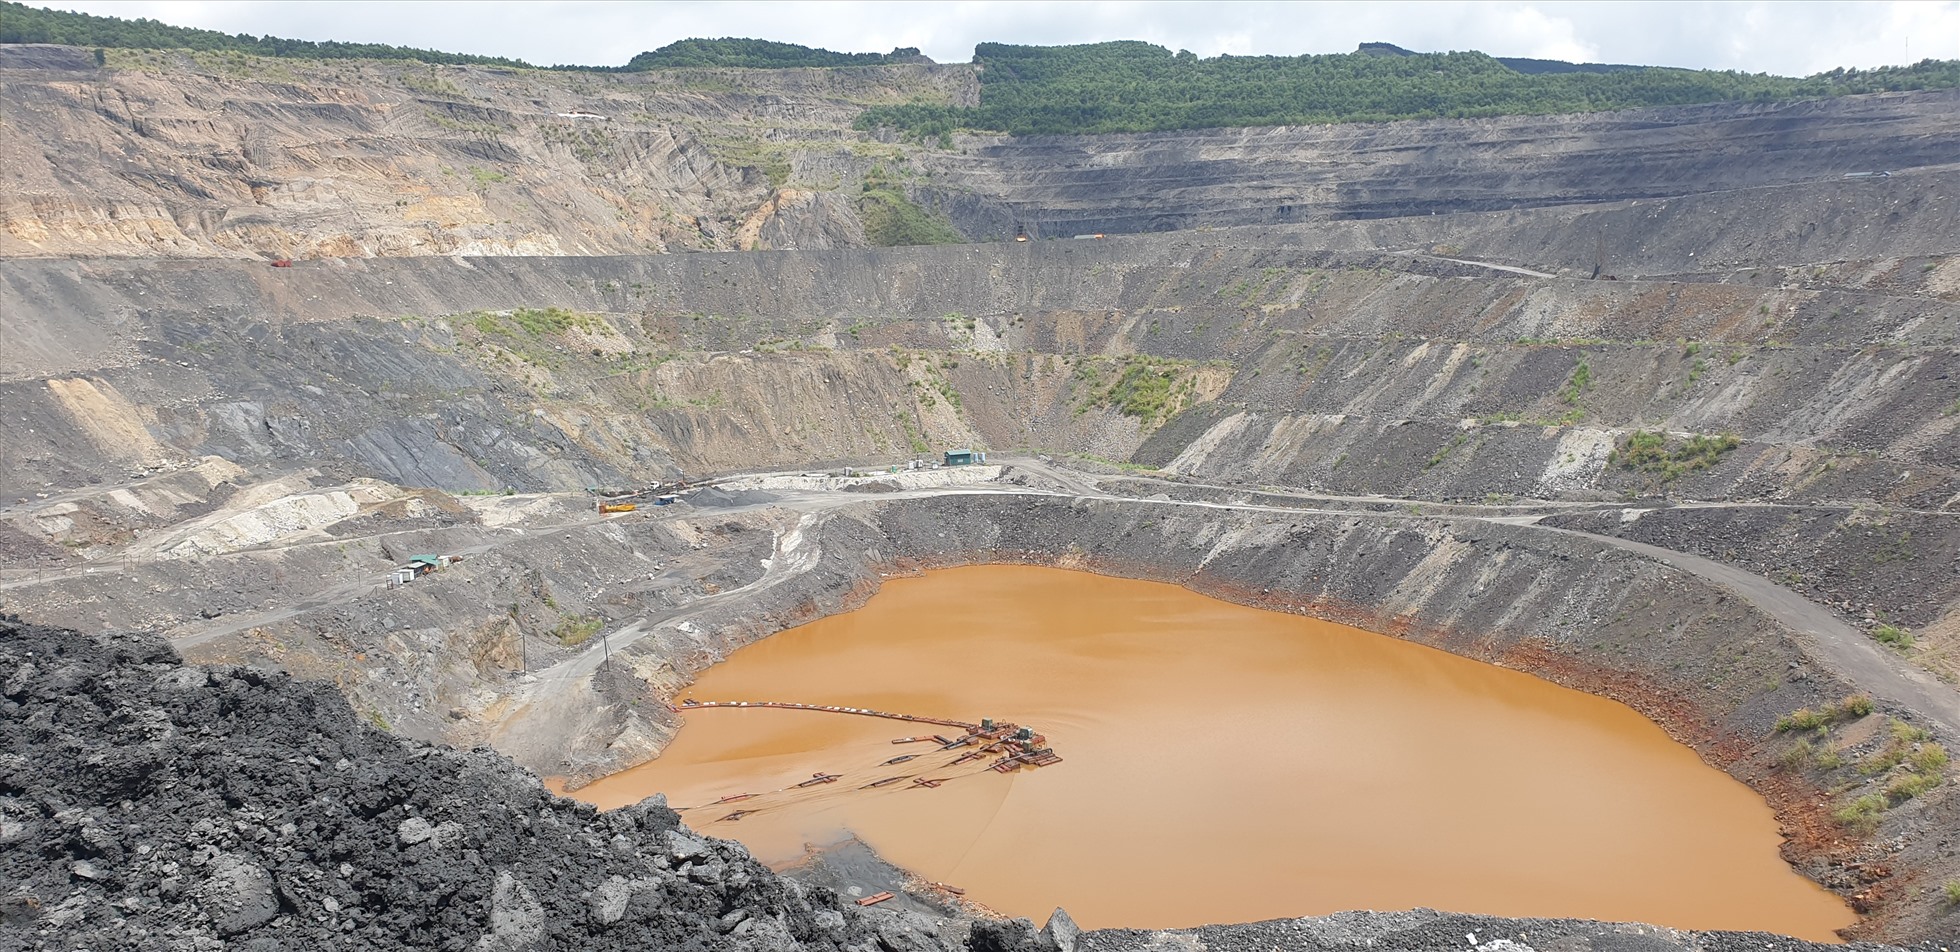 Đây là 1 trong 2 moong than của Công ty CP than Núi Béo nằm ở phường Hà Tu, đóng cửa từ cuối năm 2021. Như vậy, đến nay tại Hạ Long chỉ còn có mỏ than lộ thiên của Công ty CP than Hà Tu vẫn còn hoạt động. Dự kiến, công ty này cũng sẽ phải đóng toàn bộ mỏ lộ thiên vào năm 2028. Ảnh: Nguyễn Hùng